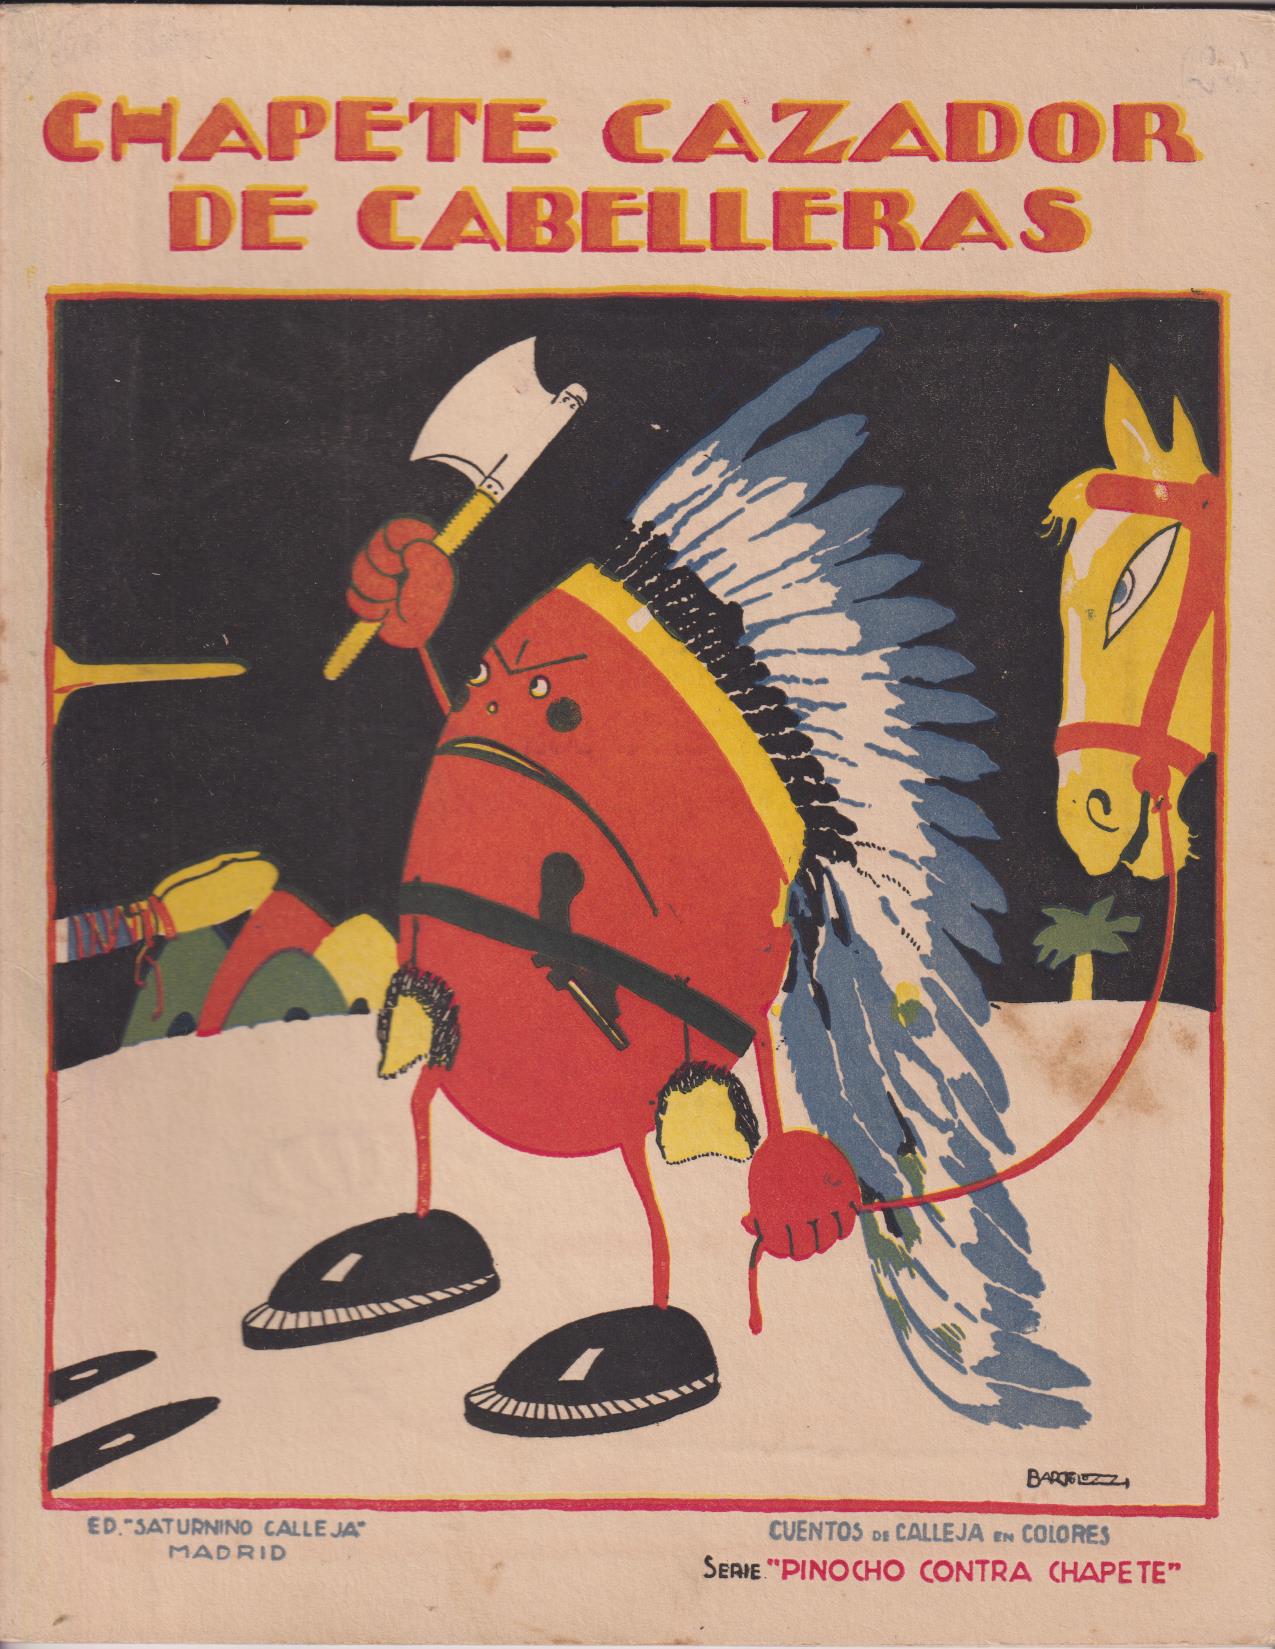 Pinocho contra Chapete nº 20. Chapete cazador de cabelleras. 1ª Edición Calleja 1923